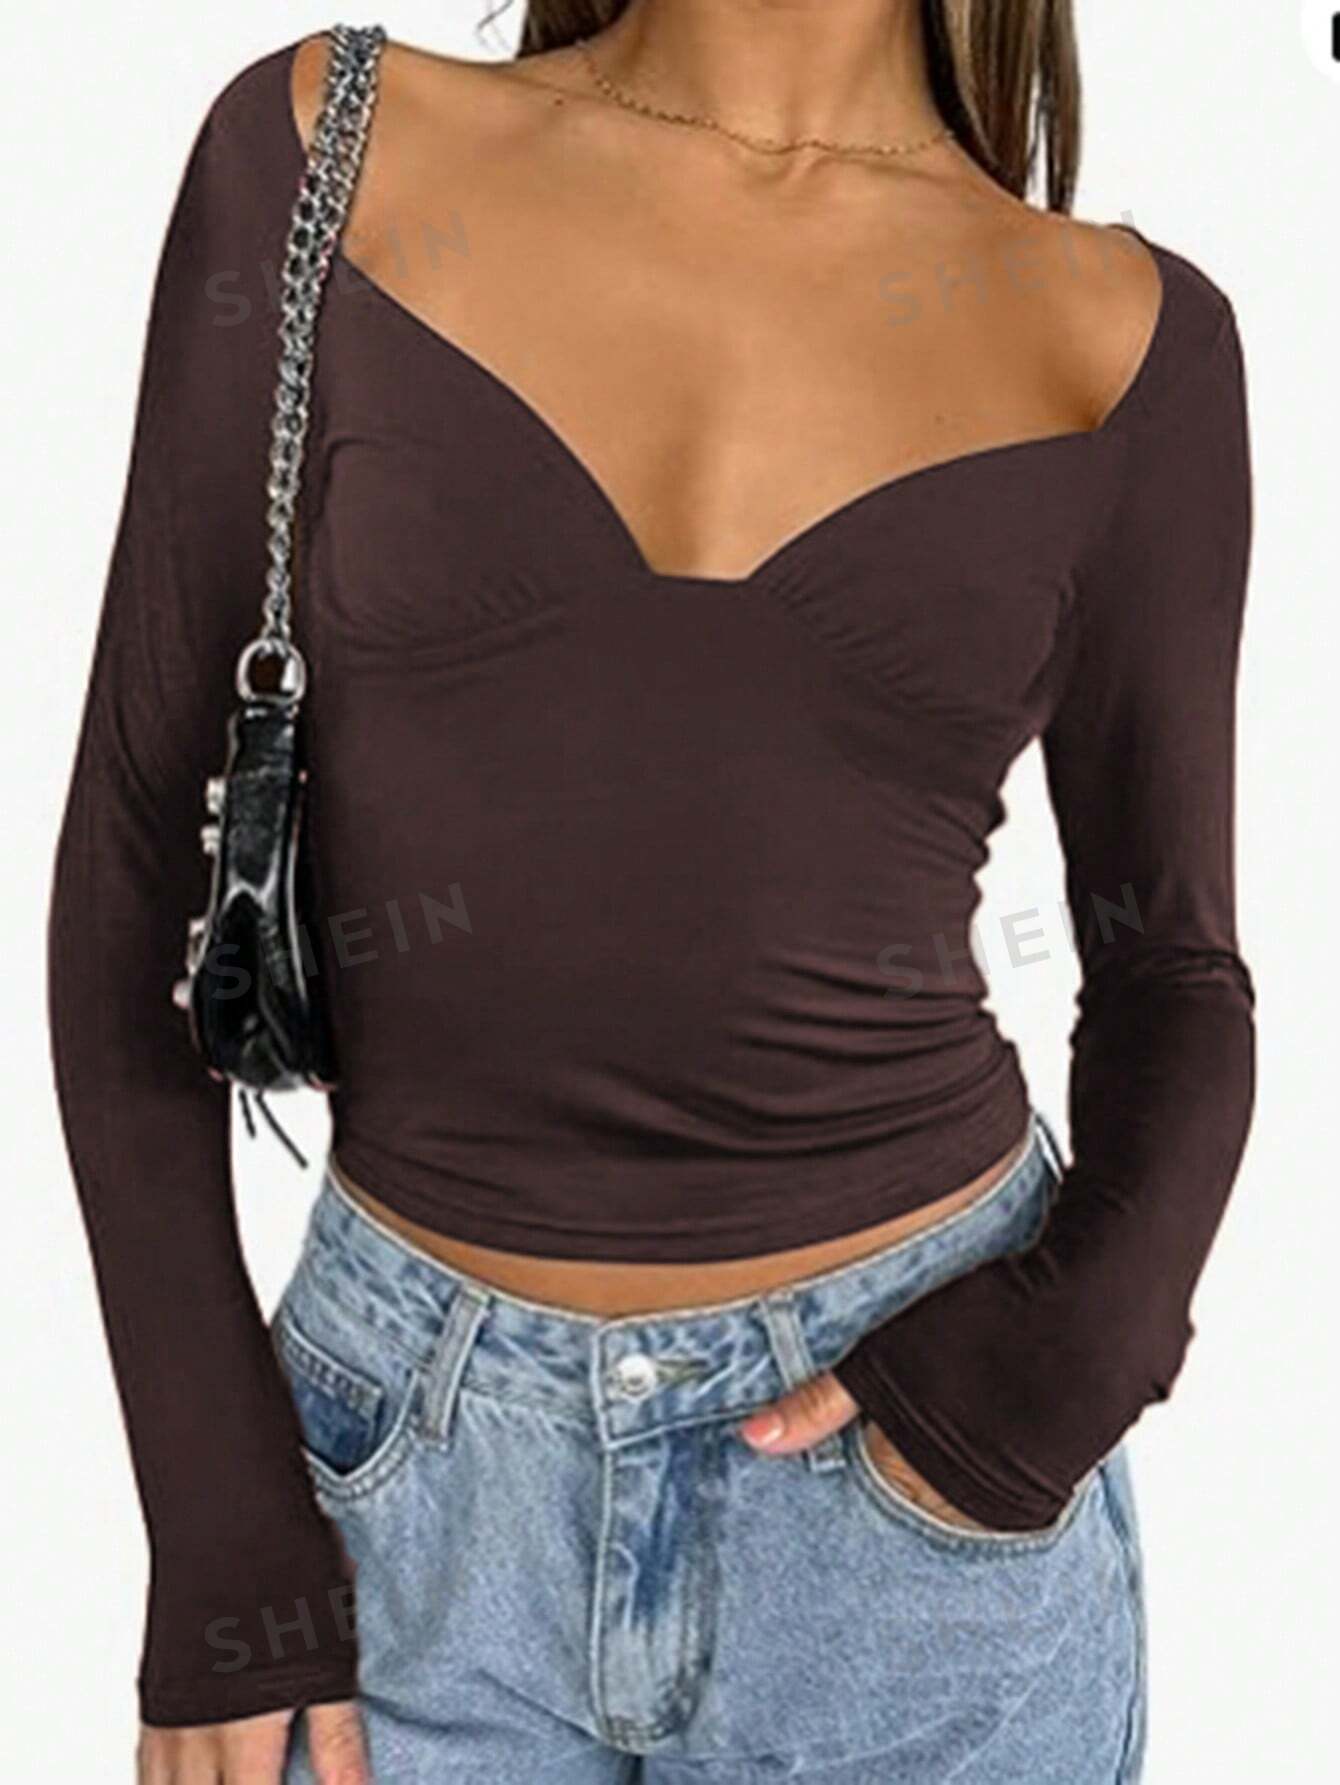 SHEIN LUNE Женская футболка с круглым вырезом и короткими рукавами, коричневый shein essnce трехцветное облегающее боди футболка с длинными рукавами многоцветный